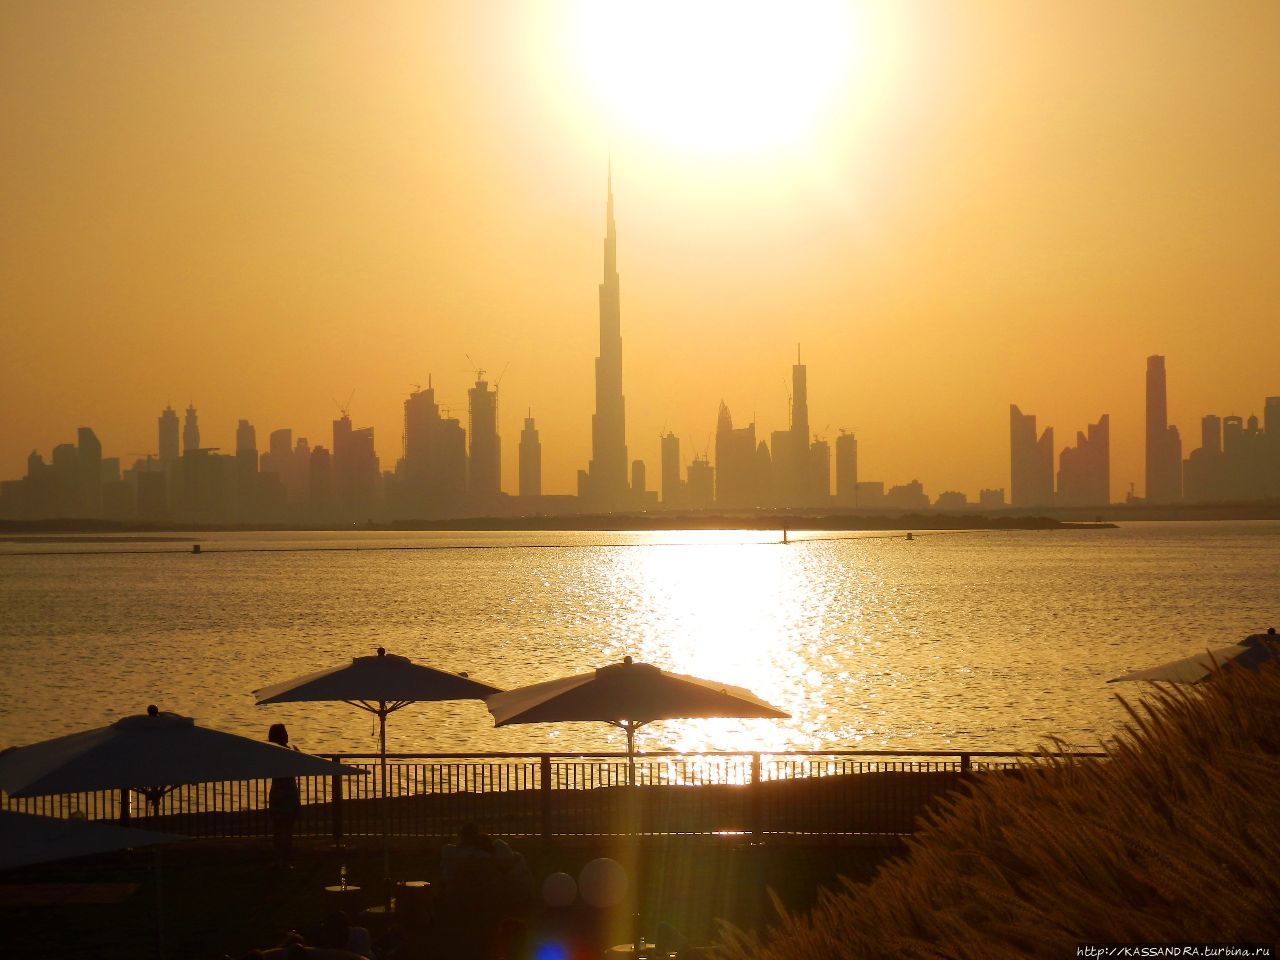 Новый район Дубай Крик Харбор. Новый мировой рекорд Дубай, ОАЭ